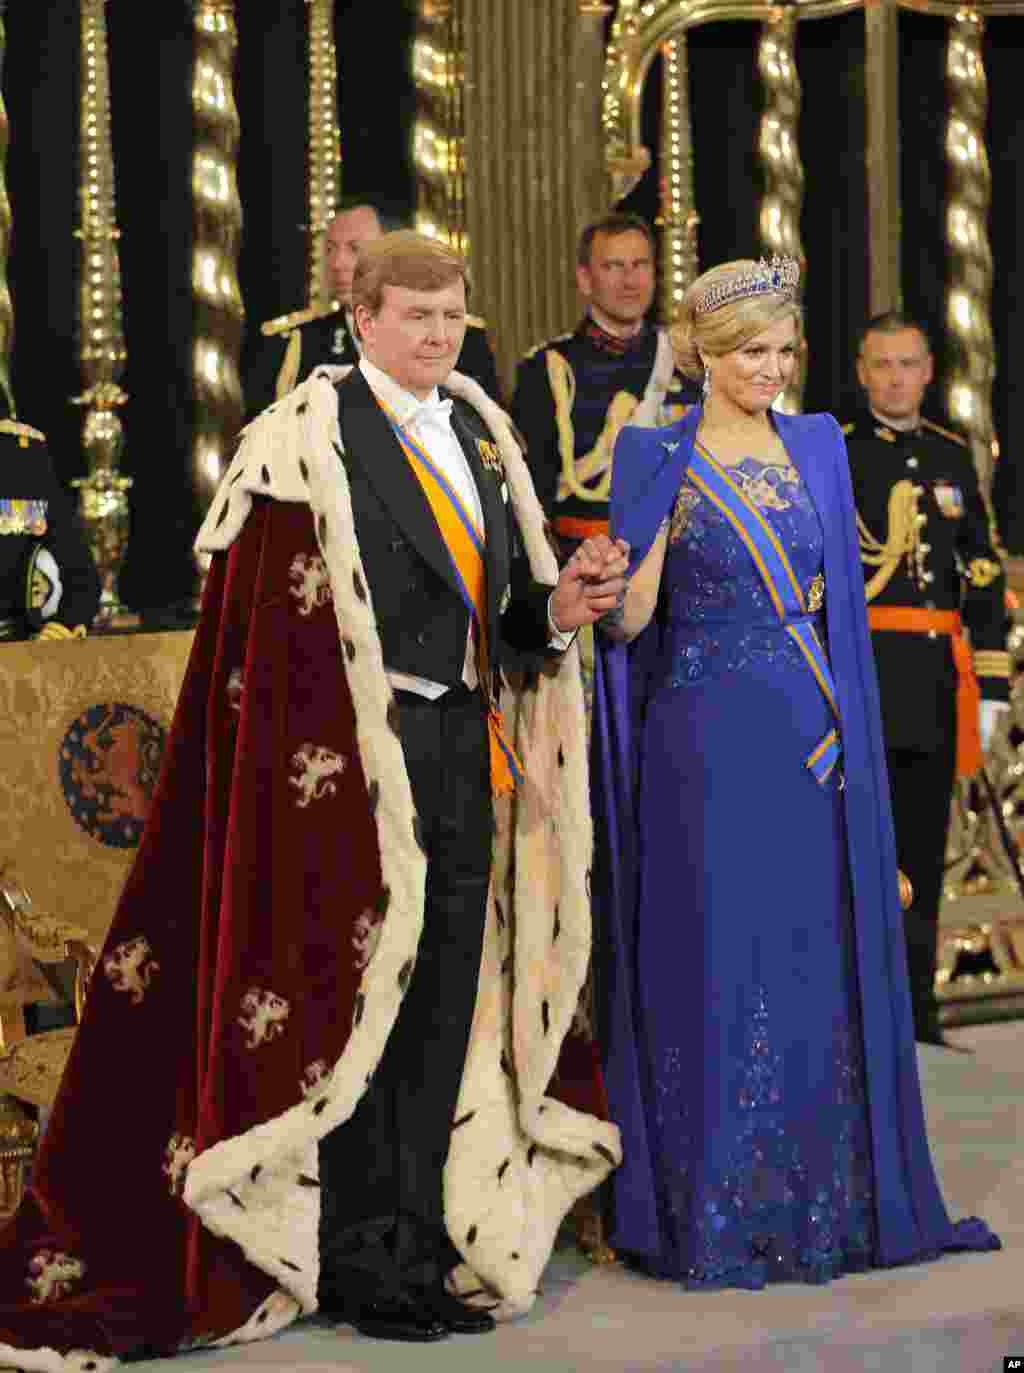 مراسم تحلیف پادشاه هلند که تخت سلطنت را از مادرش تحویل گرفته است. در این تصویر، پادشاه ویلم الکساندر همراه همسرش ملکه ماکزیمای هلند دیده می شود. آمستردام، ۳۰ آوریل ۲۰۱۳